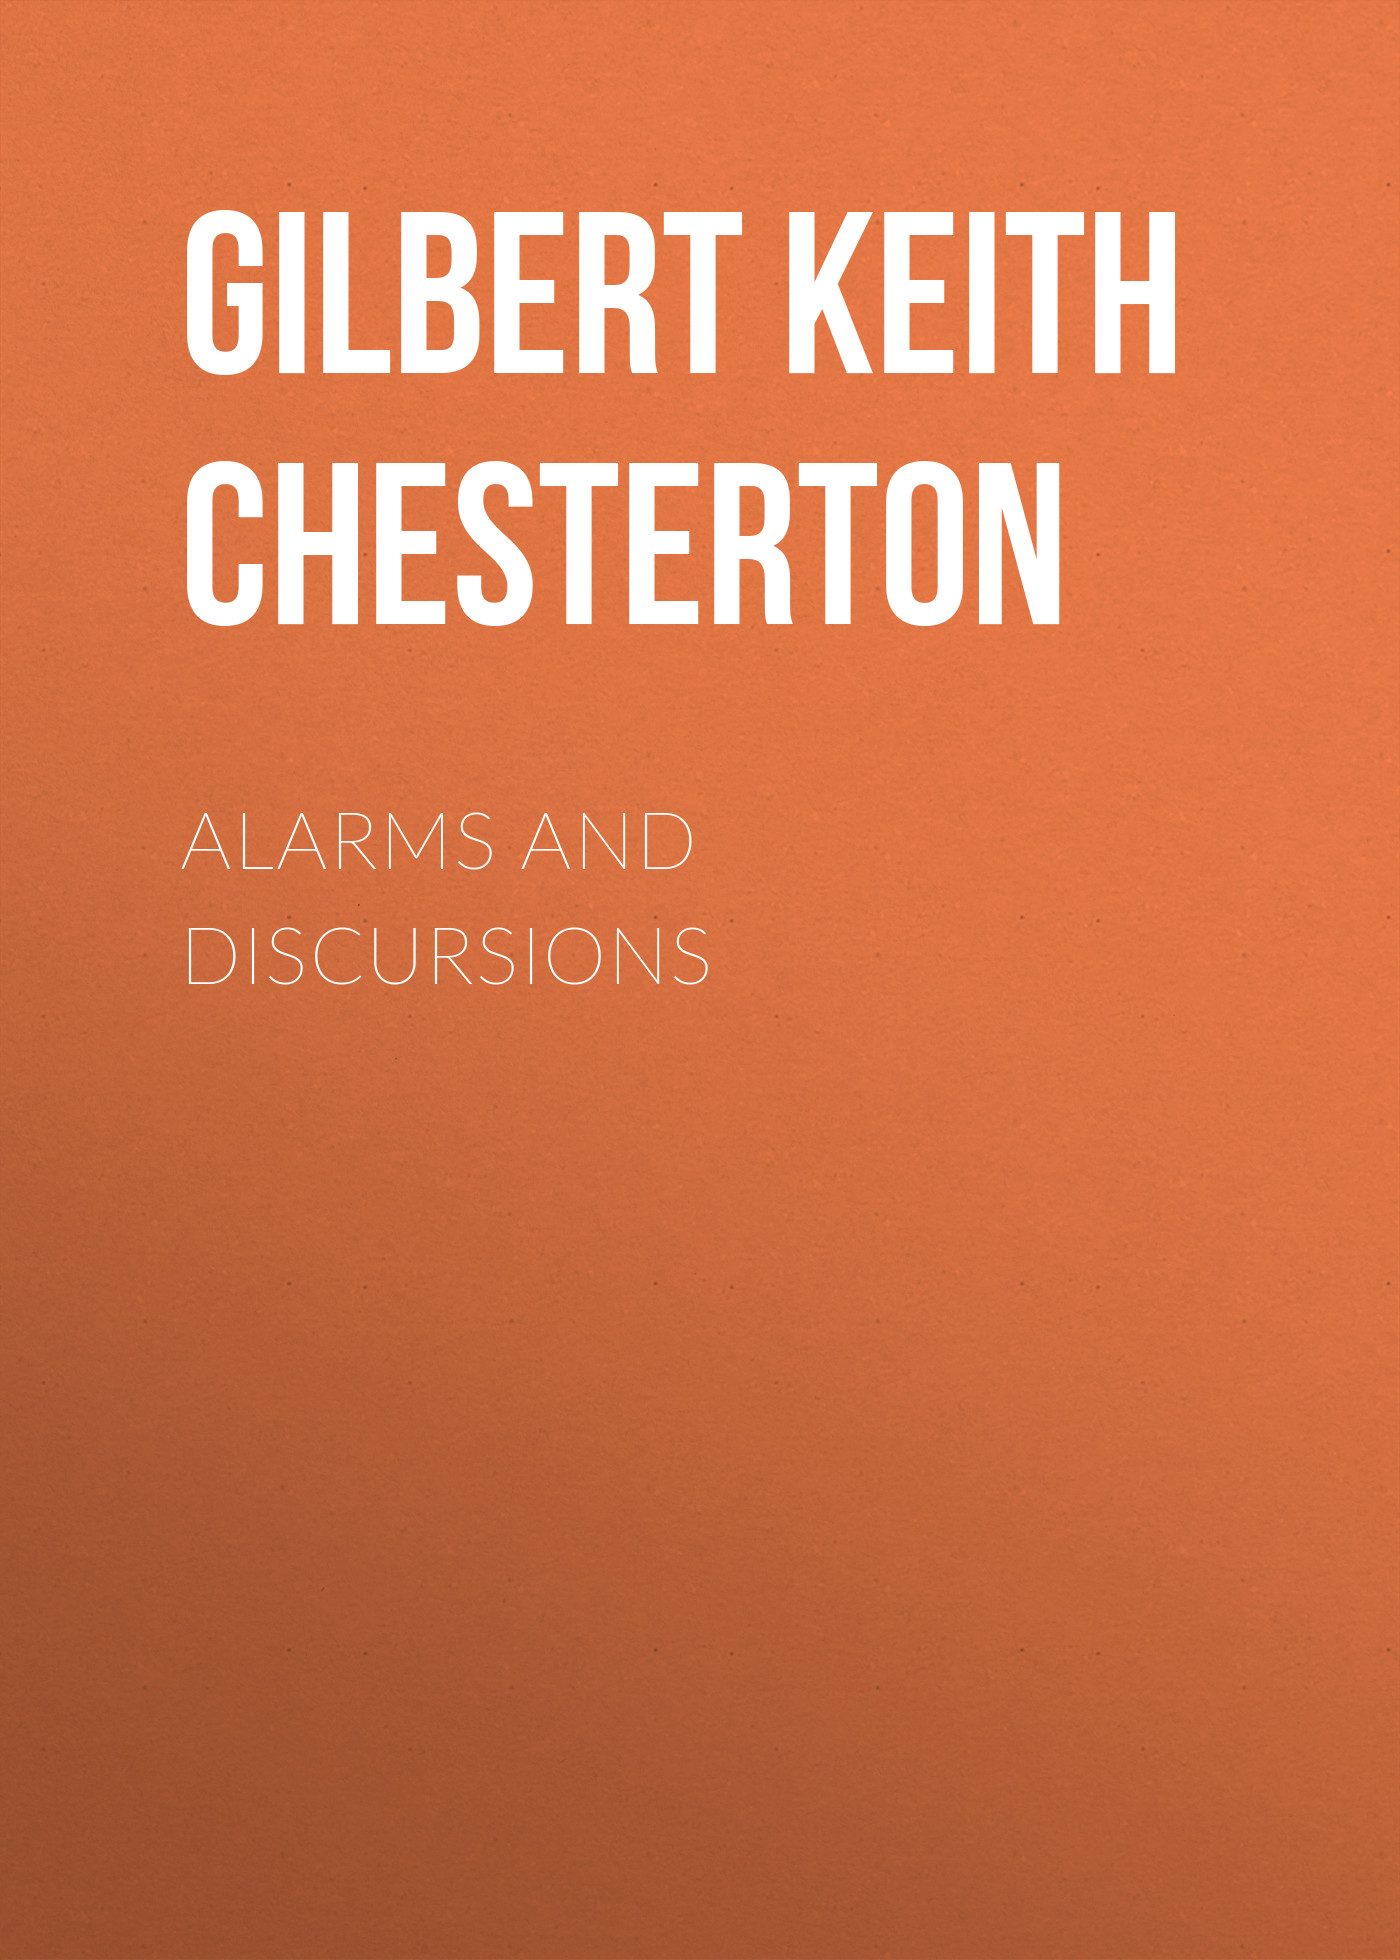 Книга Alarms and Discursions из серии , созданная Gilbert Chesterton, может относится к жанру Зарубежная старинная литература, Зарубежная классика. Стоимость электронной книги Alarms and Discursions с идентификатором 25020555 составляет 0 руб.